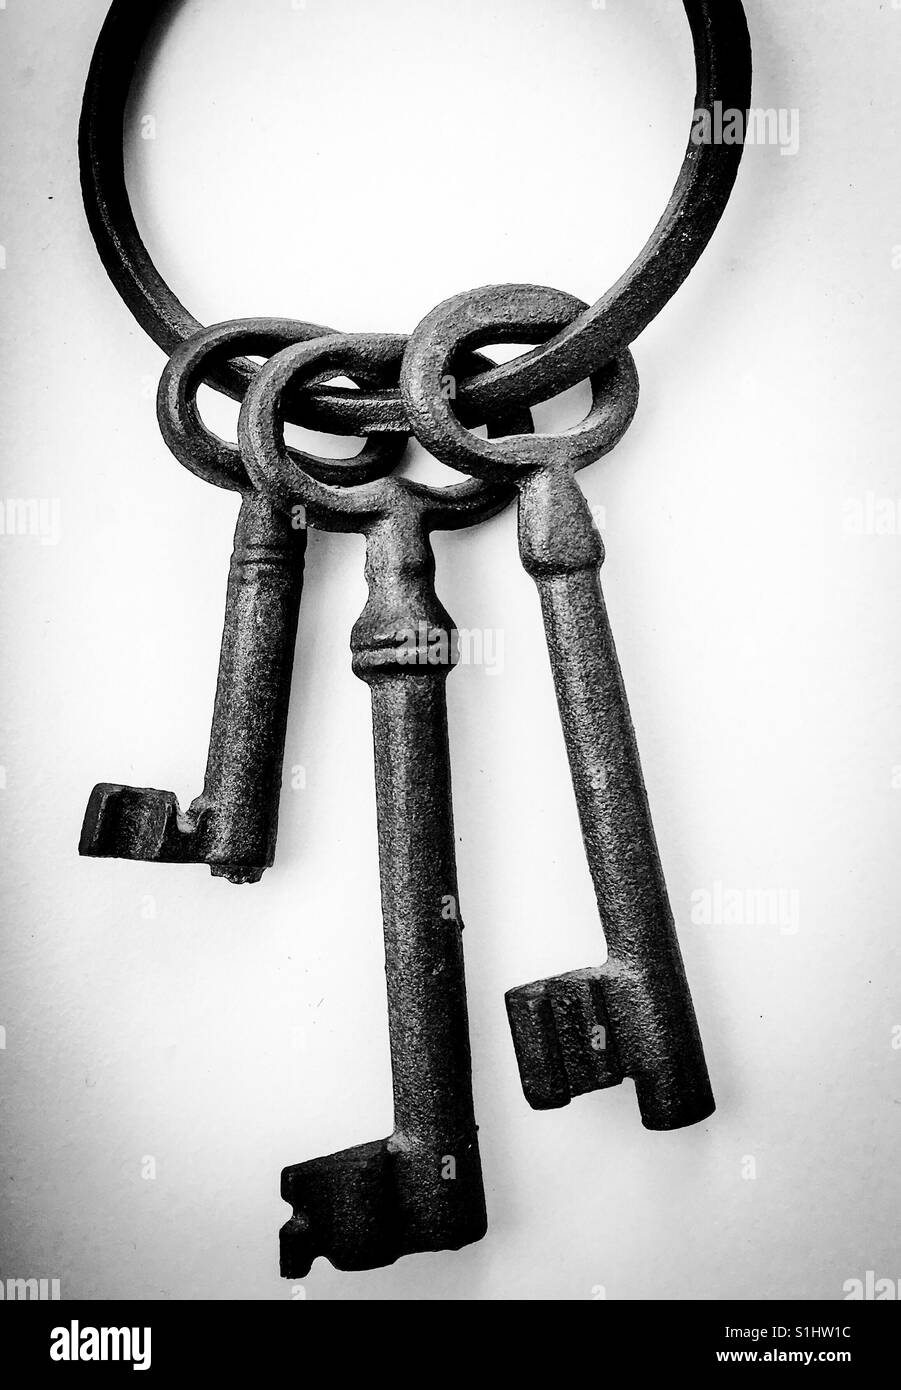 Große alte altmodische Schlüssel auf Metall Schlüsselanhänger